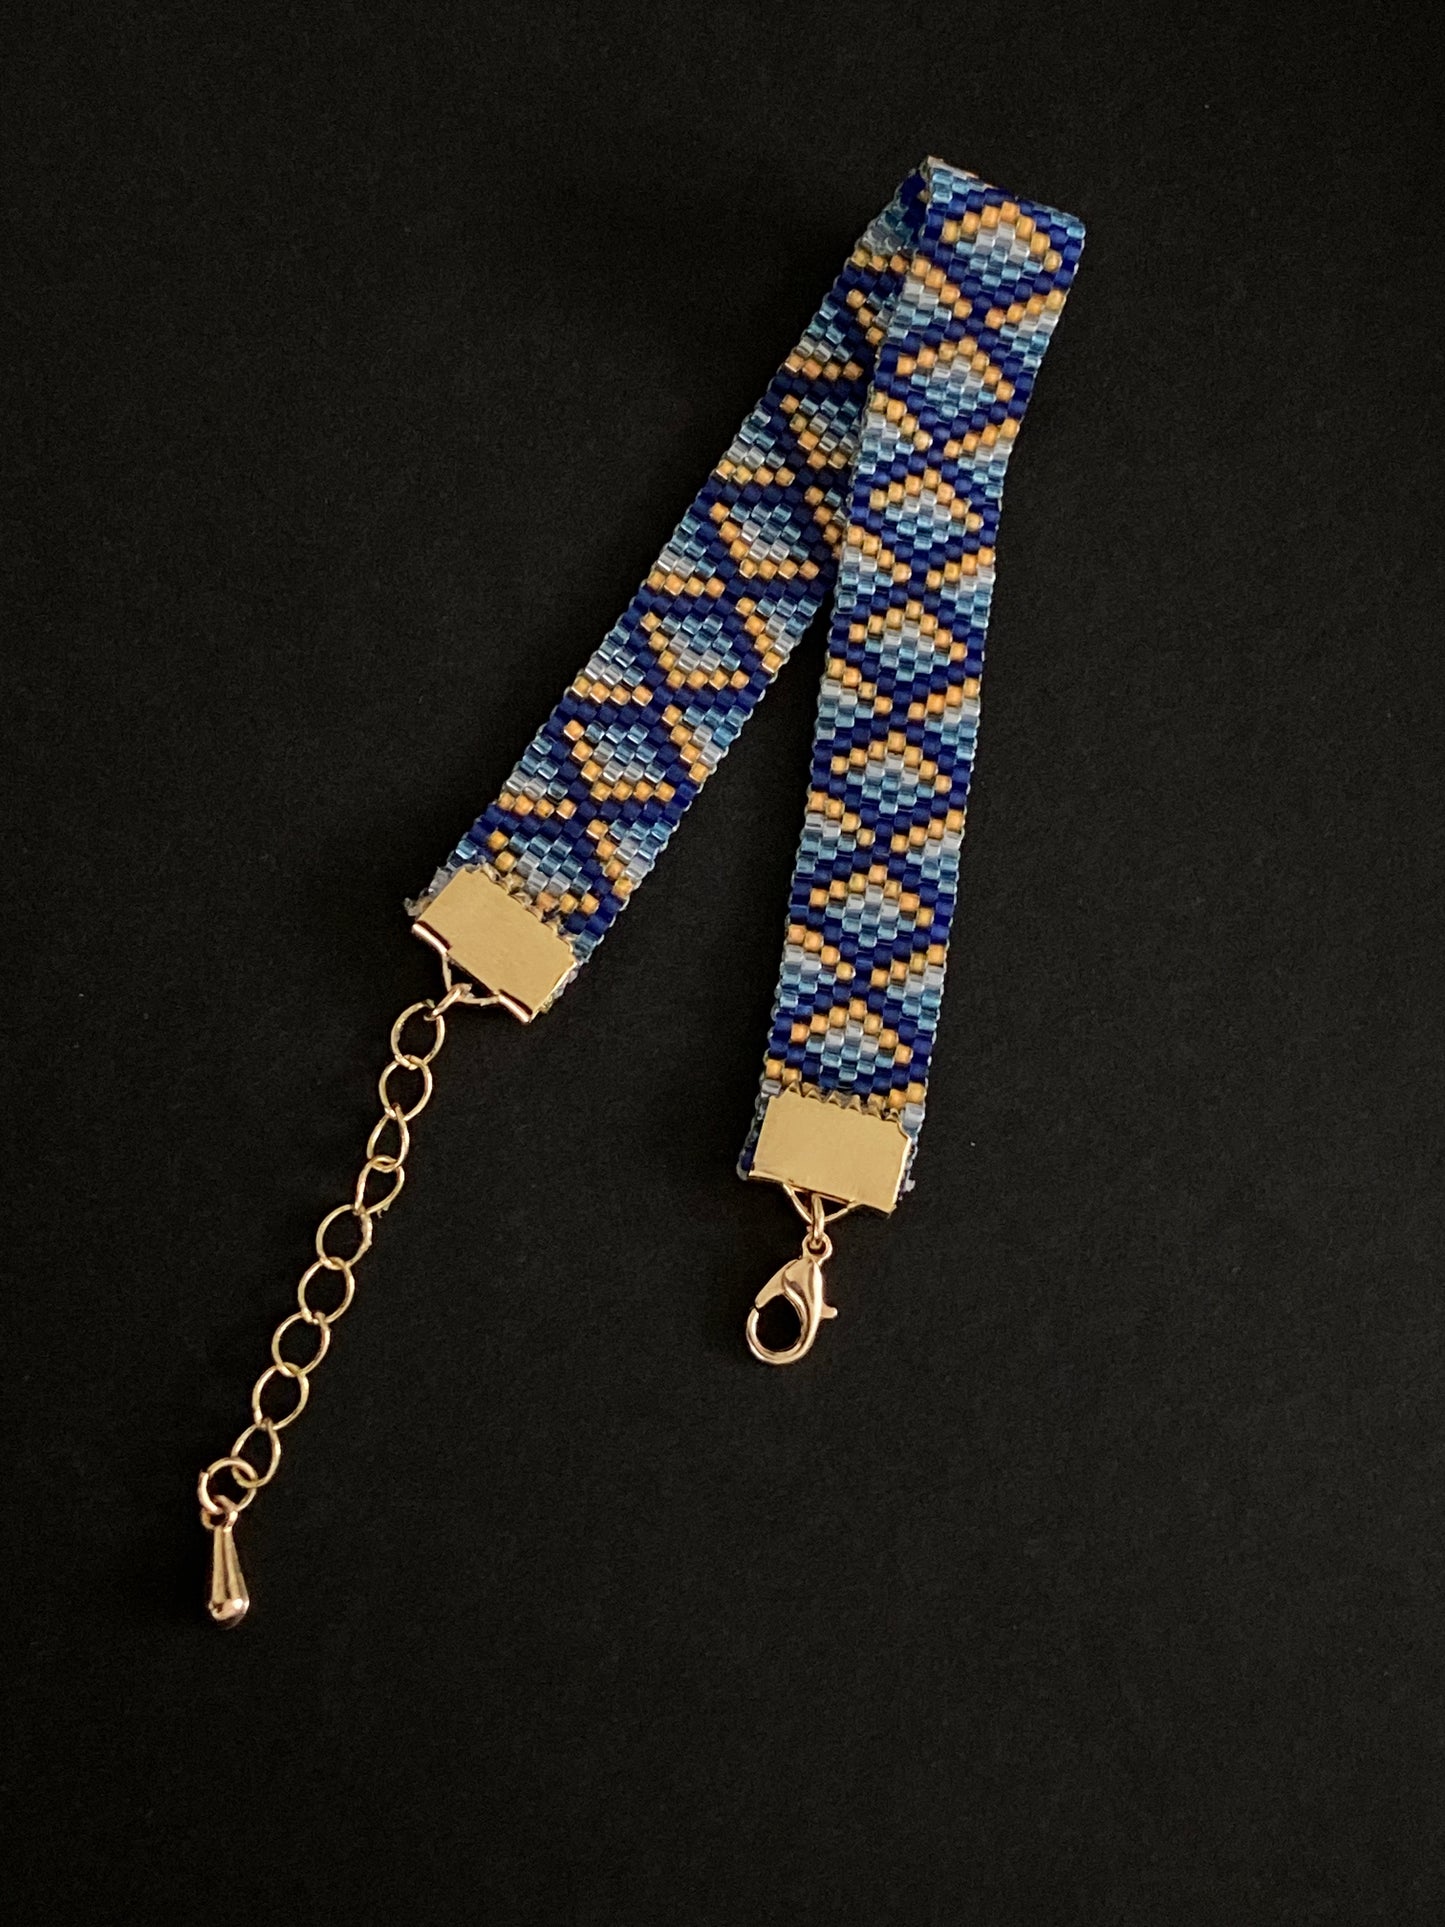 Patterned Bracelet